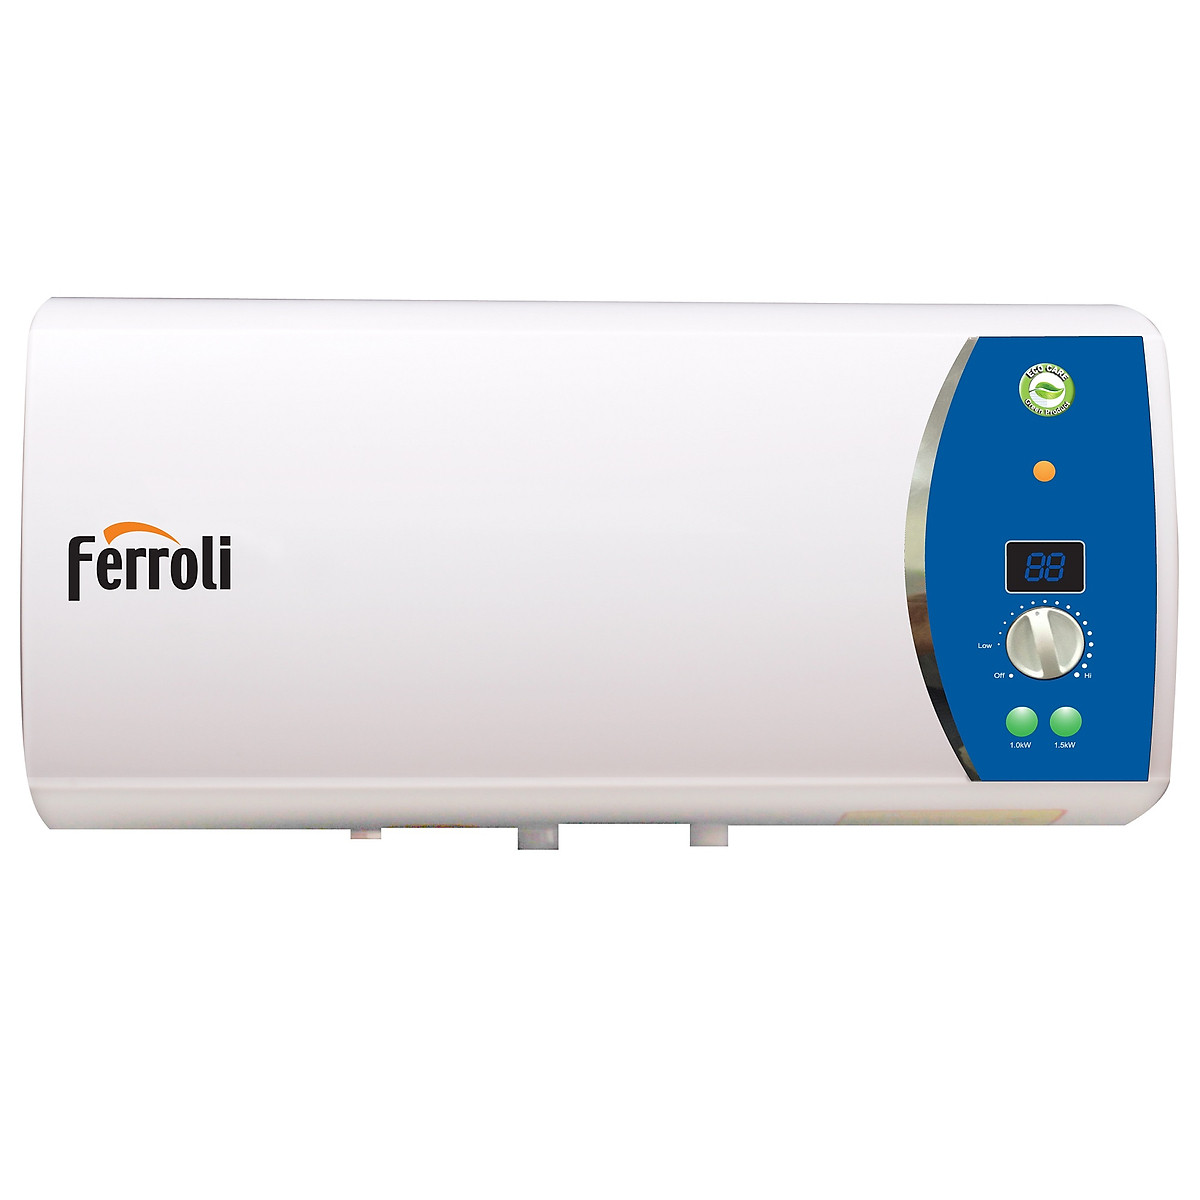 Bình nước nóng Ferroli Verdi AE20L, 3 công suất, thanh đốt siêu bền, hiển thị nhiệt độ, 2.500W - Hàng chính hãng